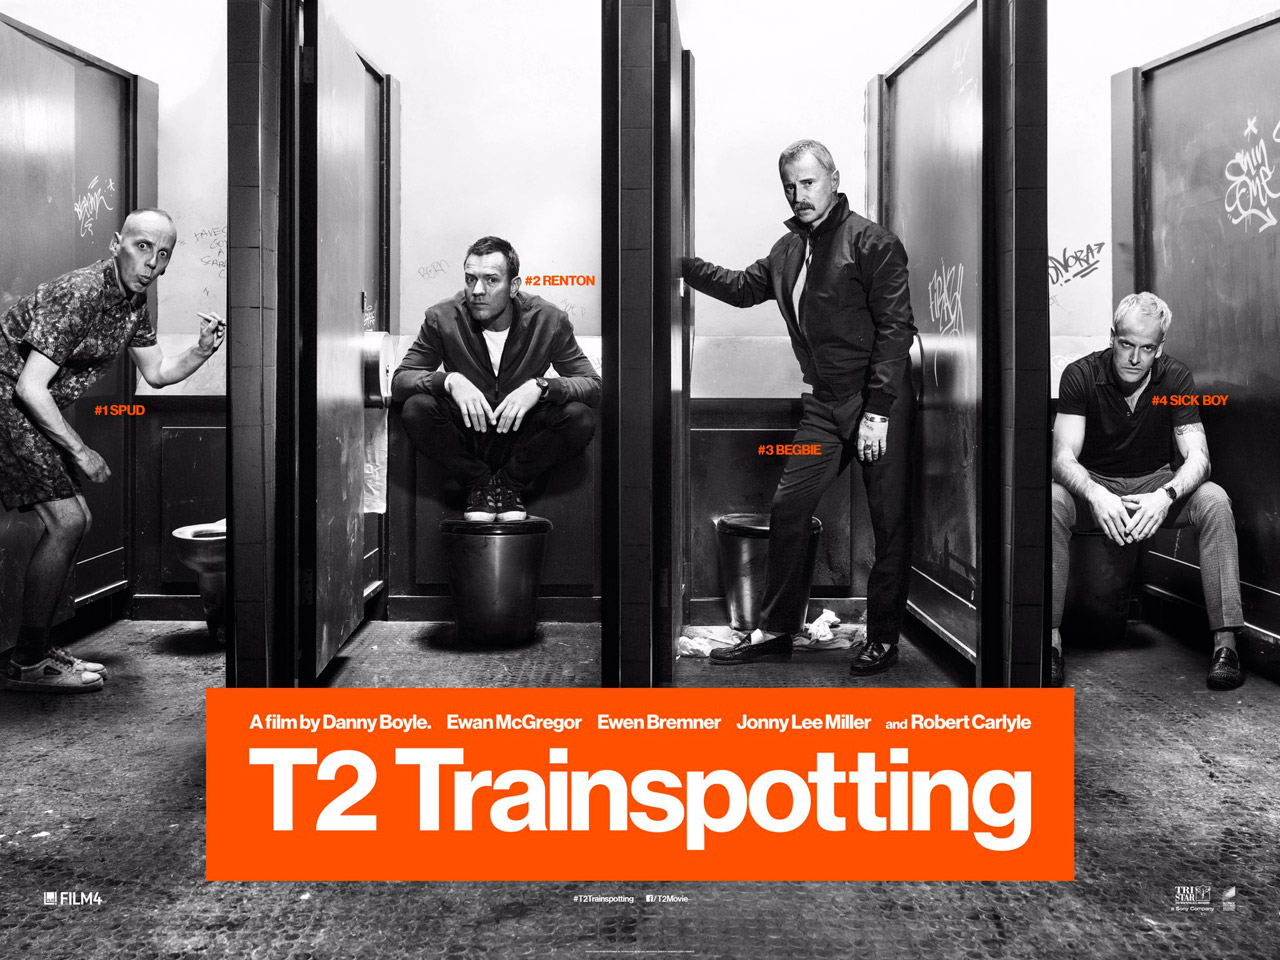 Trainspotting 2 Trailer & Poster